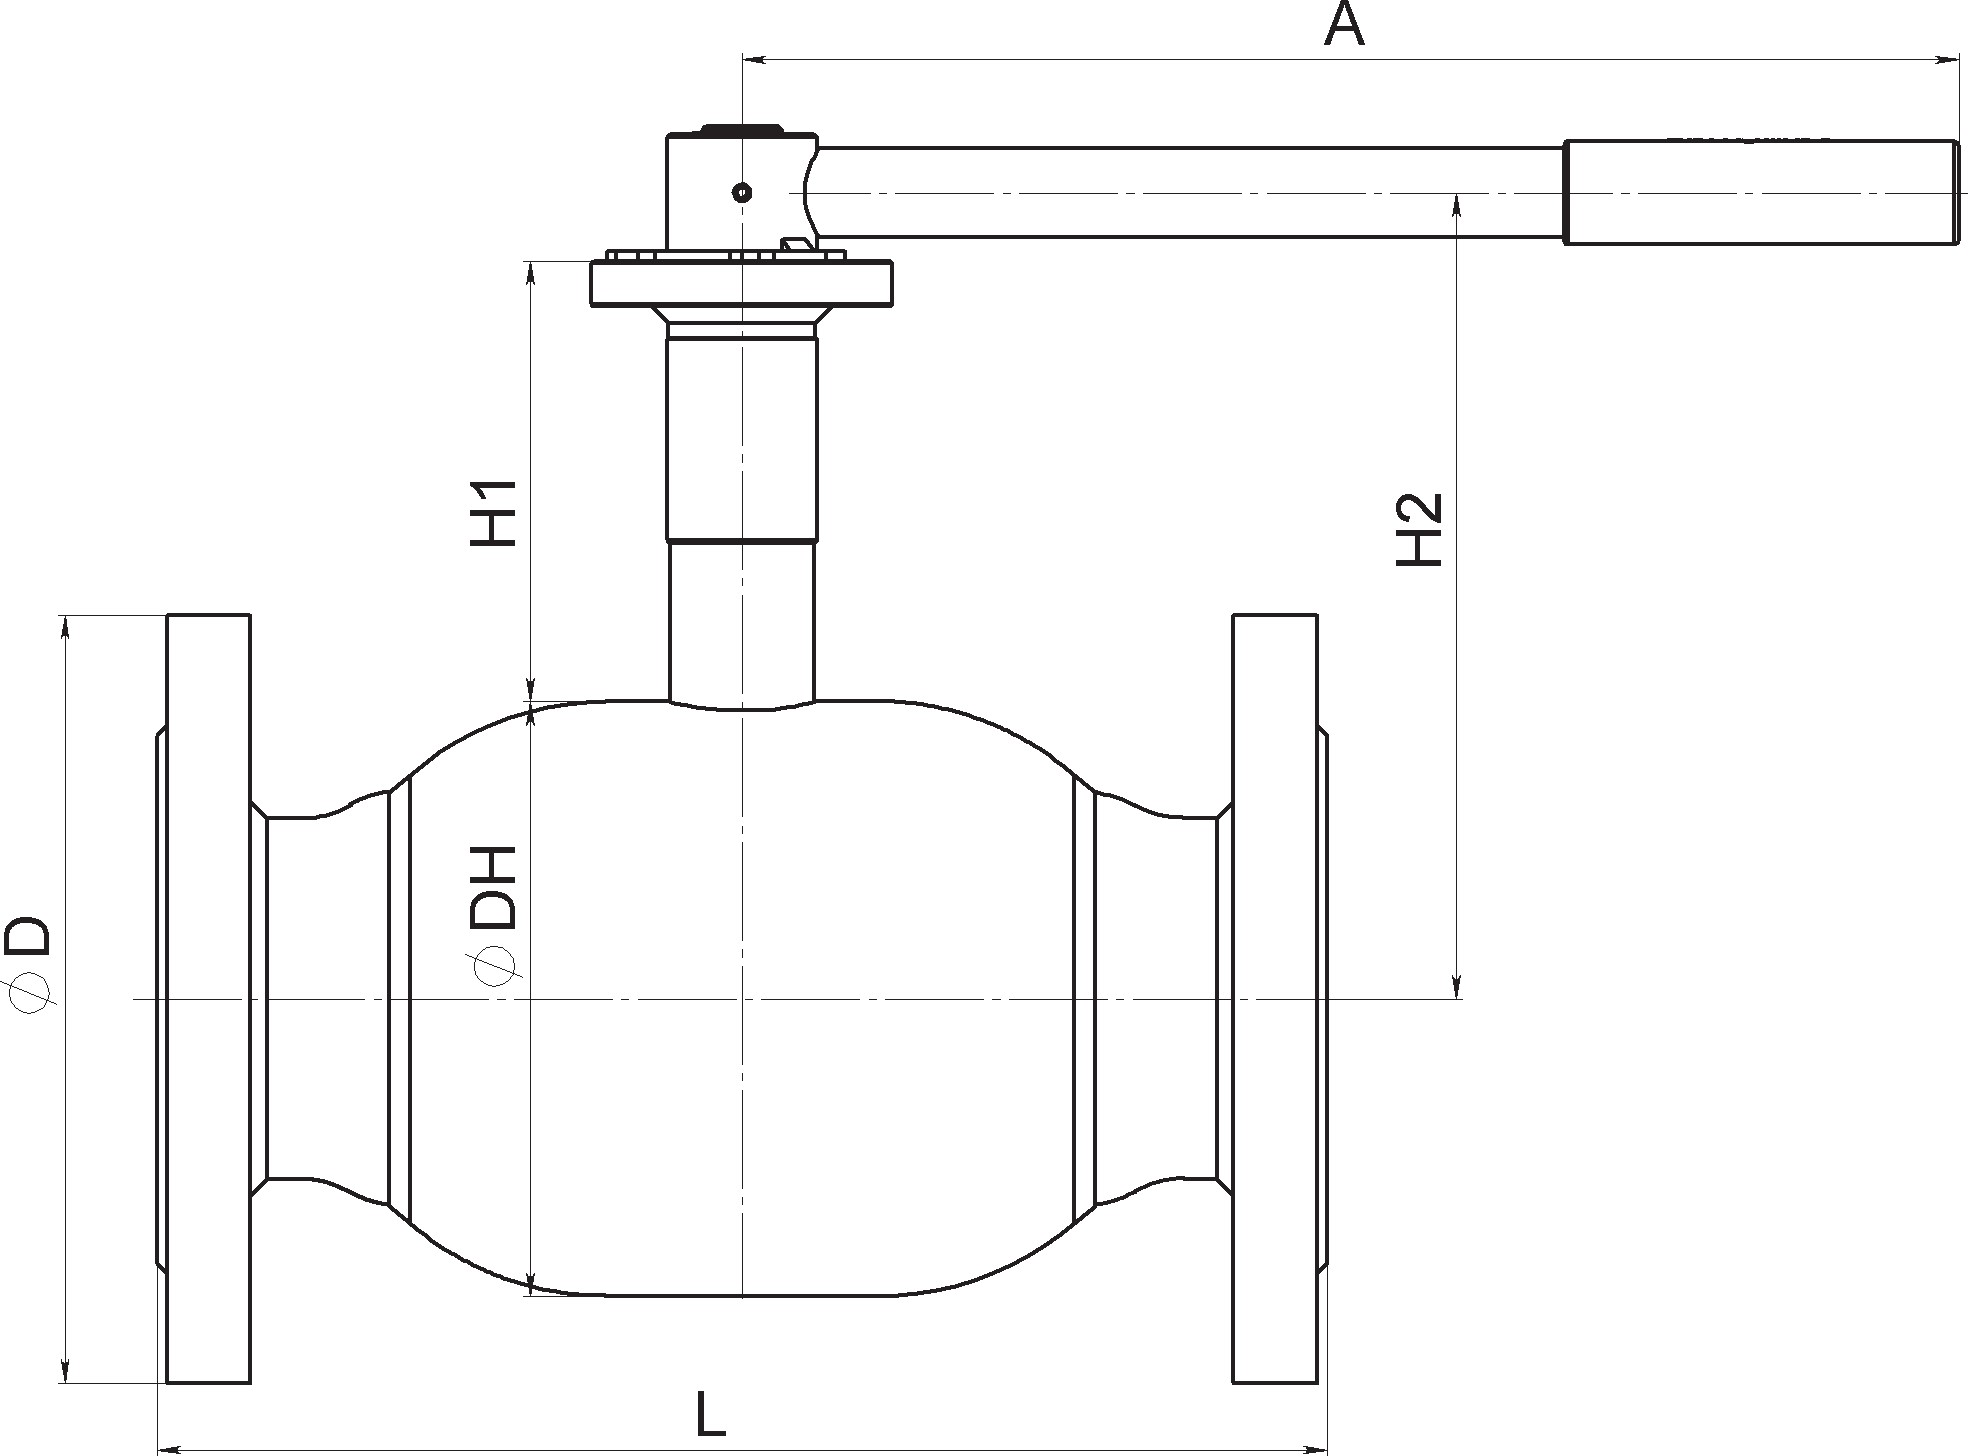 Кран шаровый Broen Ballomax-КШТ61.113А.16-25 Ду125 Ру25 полнопроходный с плавающим шаром, с ISO фланцем, корпус - сталь, уплотнение - EPDM, фланцевый, ручка-рычаг